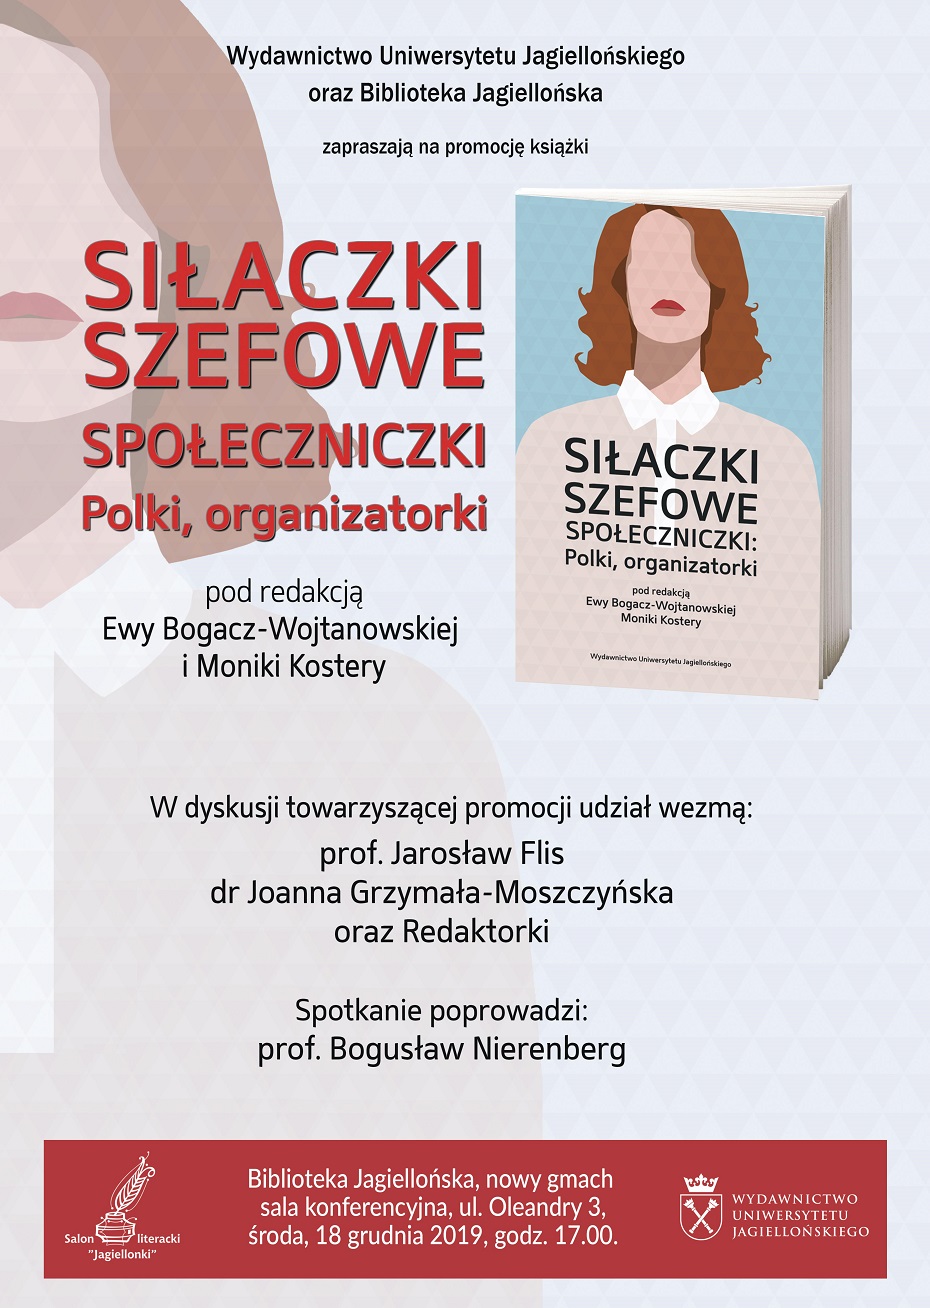 Plakat informujący o promocji książki - Siłaczki, szefowe, społeczniczki: Polki, organizatorki, pod redakcją Ewy Bogacz-Wojnarowskiej i Moniki Kostery. Pełny opis znajduje się nad grafiką